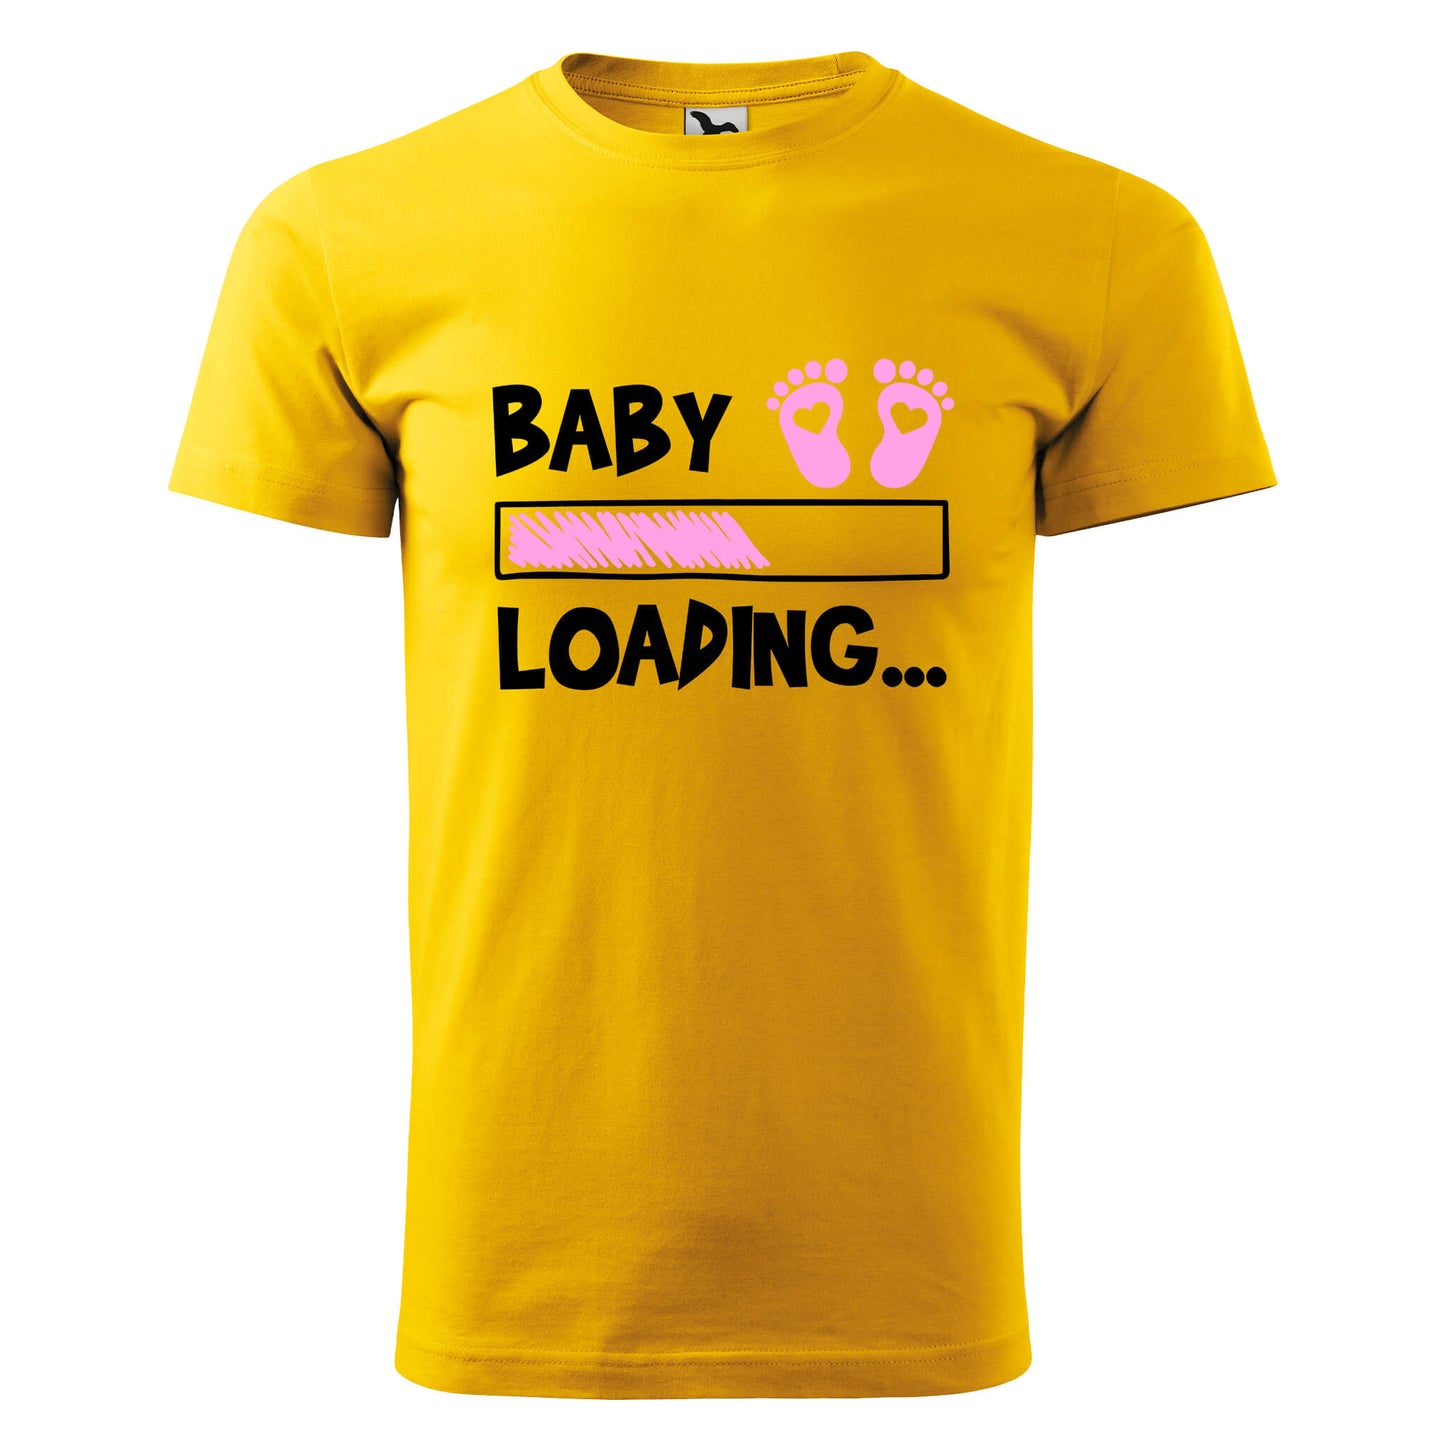 Babygirl loading t-shirt - rvdesignprint